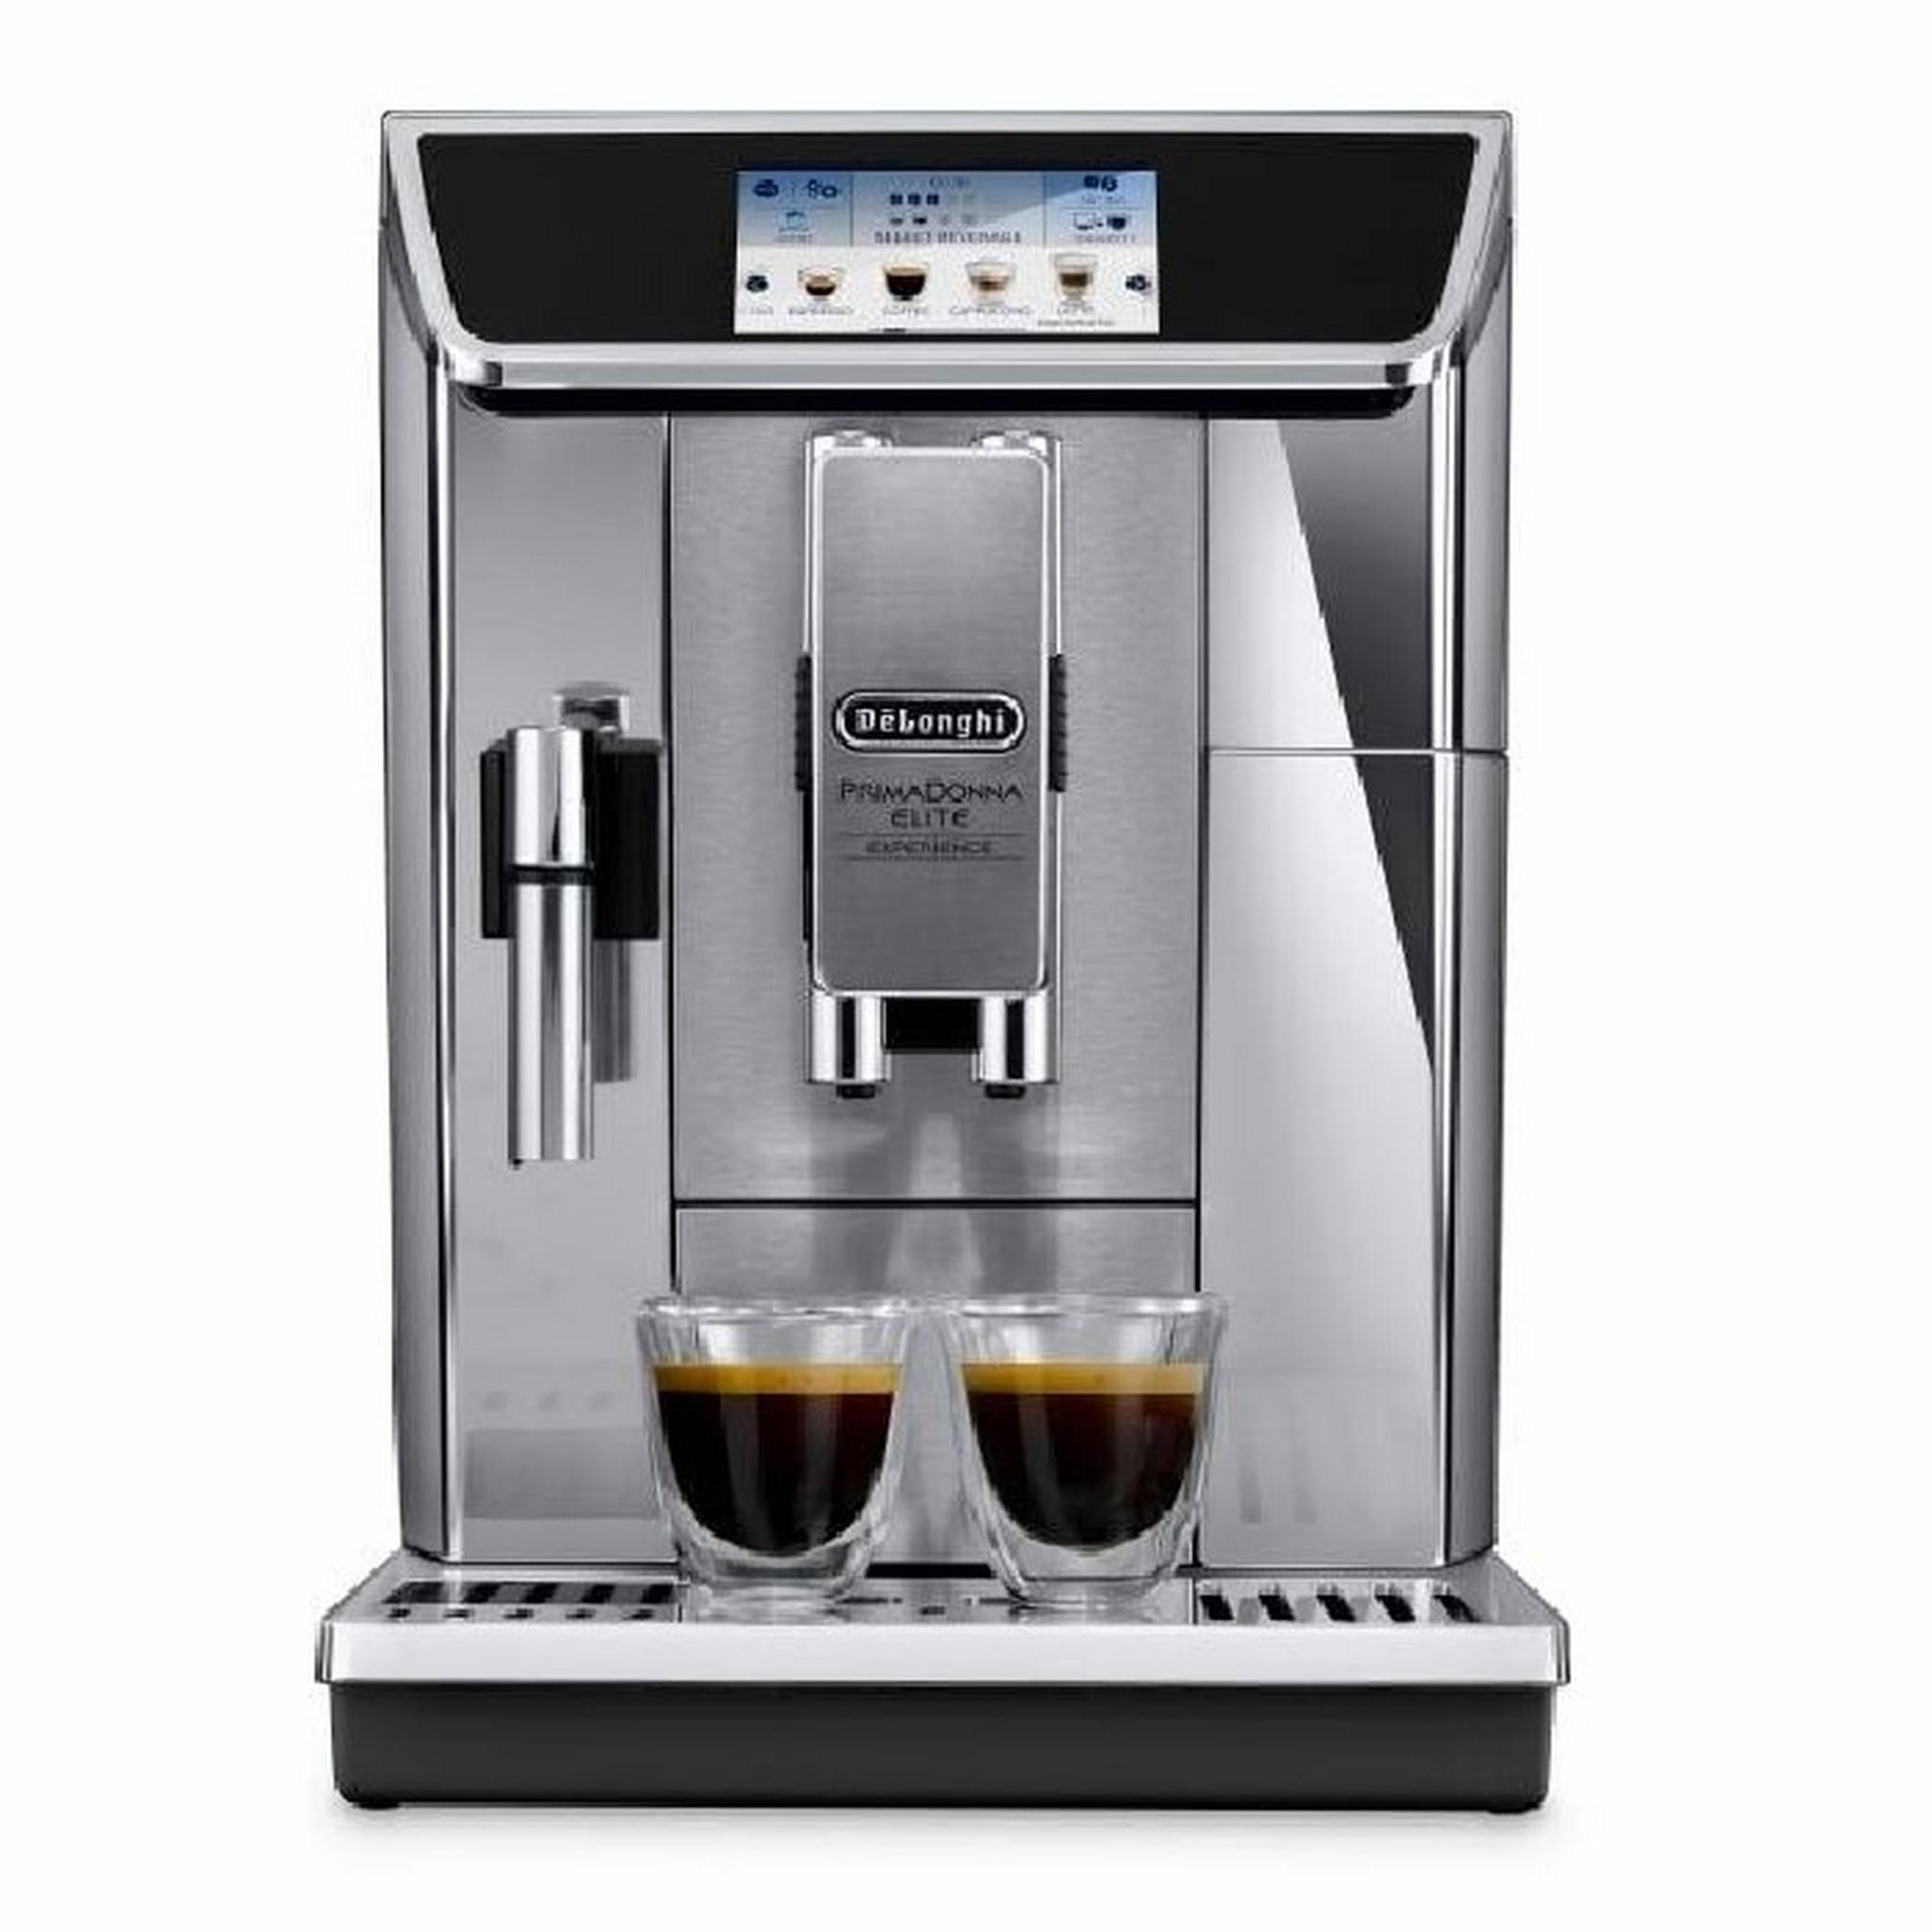 ماكينة تحضير القهوة ايليت ديلونجي ، قدرة 1450 واط، سعة 1 لتر، DLECAM650.85MS - ستانلس ستيل